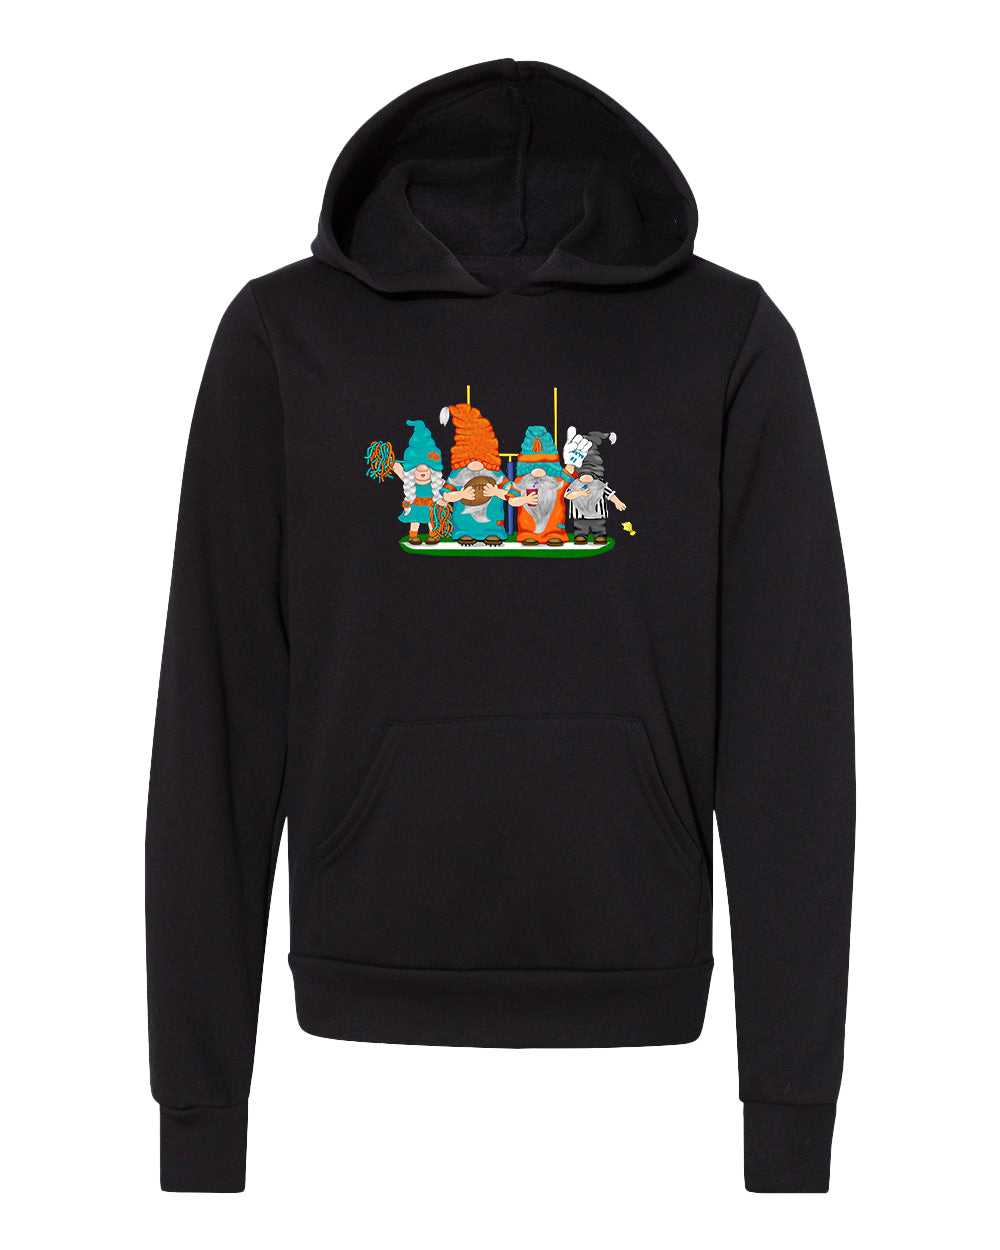 Aqua & Orange Football Gnomes  (similar to Miami) on Kids Hoodie